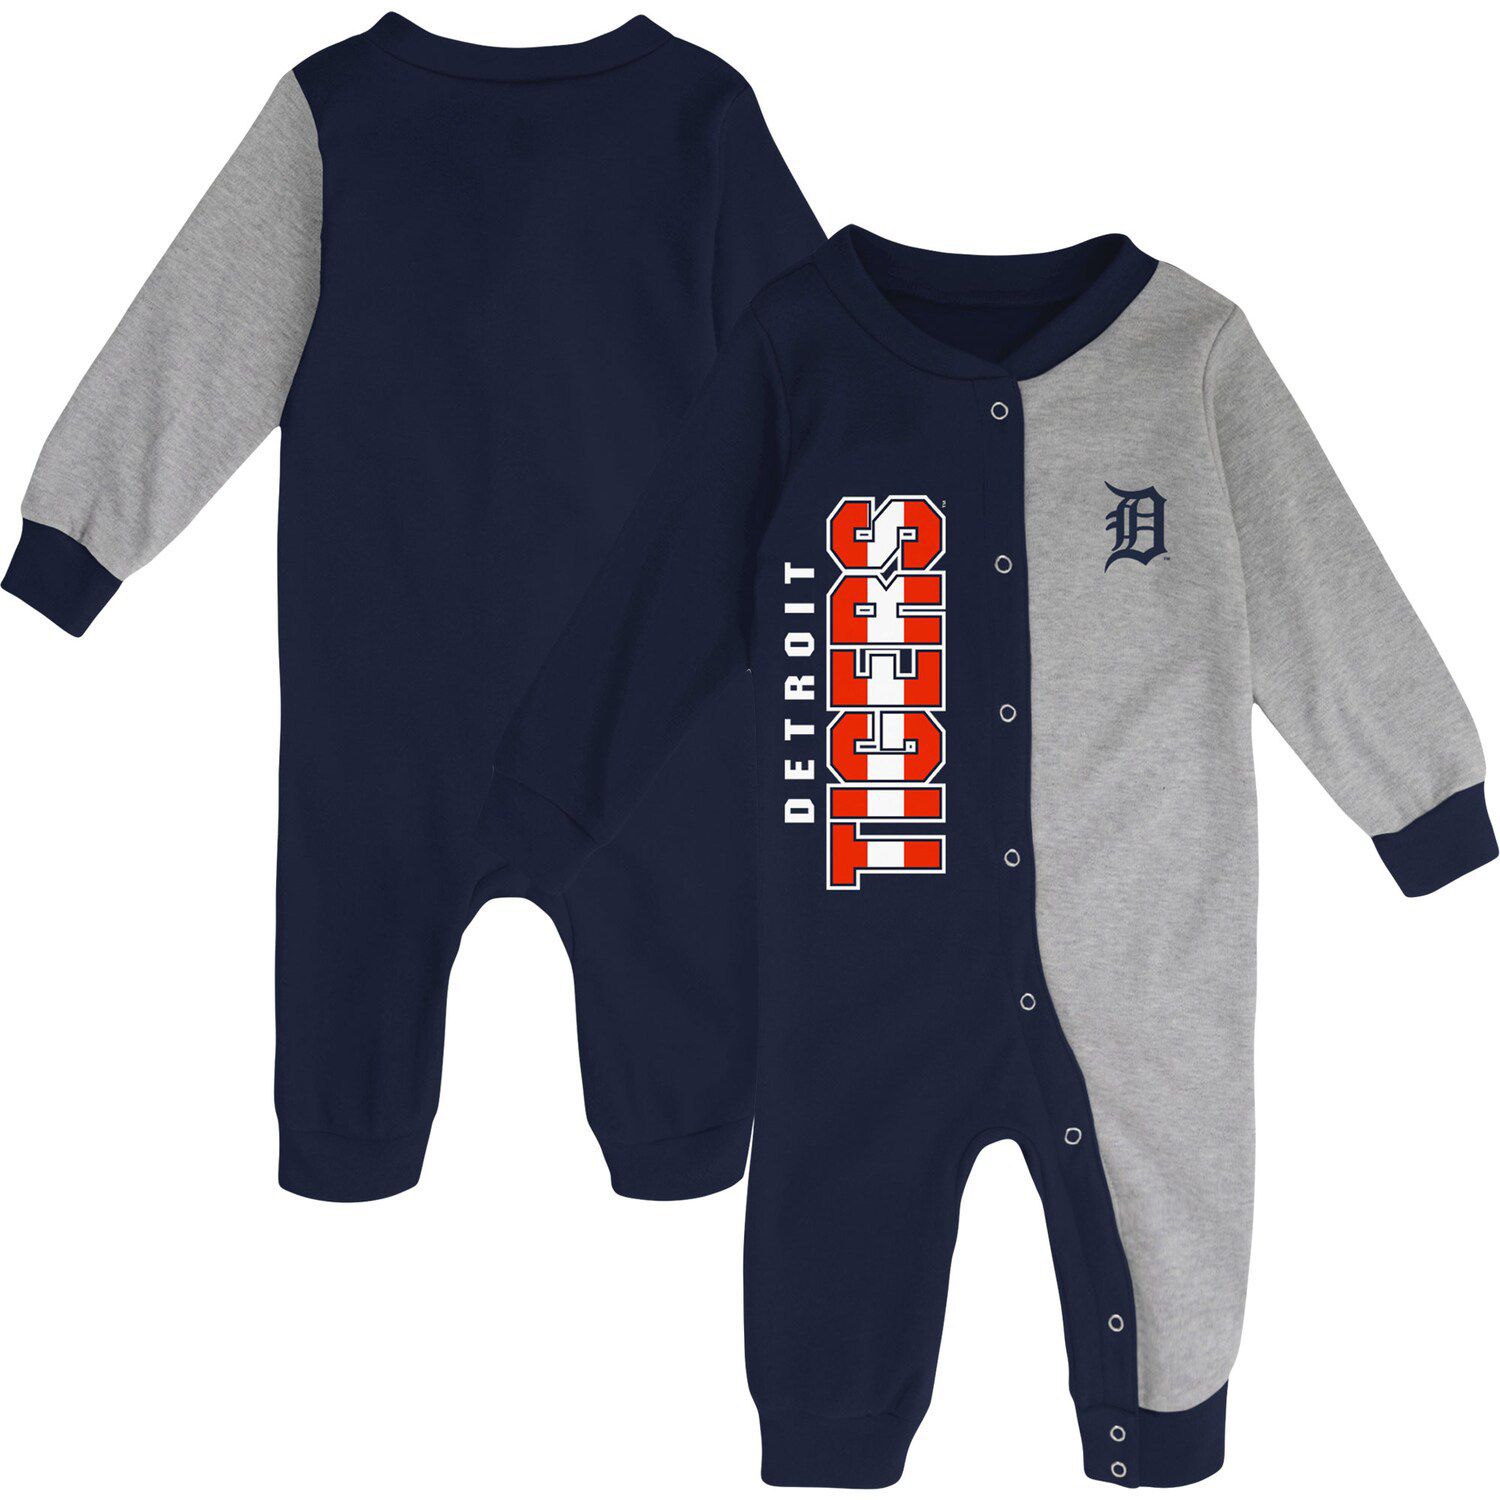 Lids Chicago Cubs Newborn & Infant Pinch Hitter T-Shirt Shorts Set